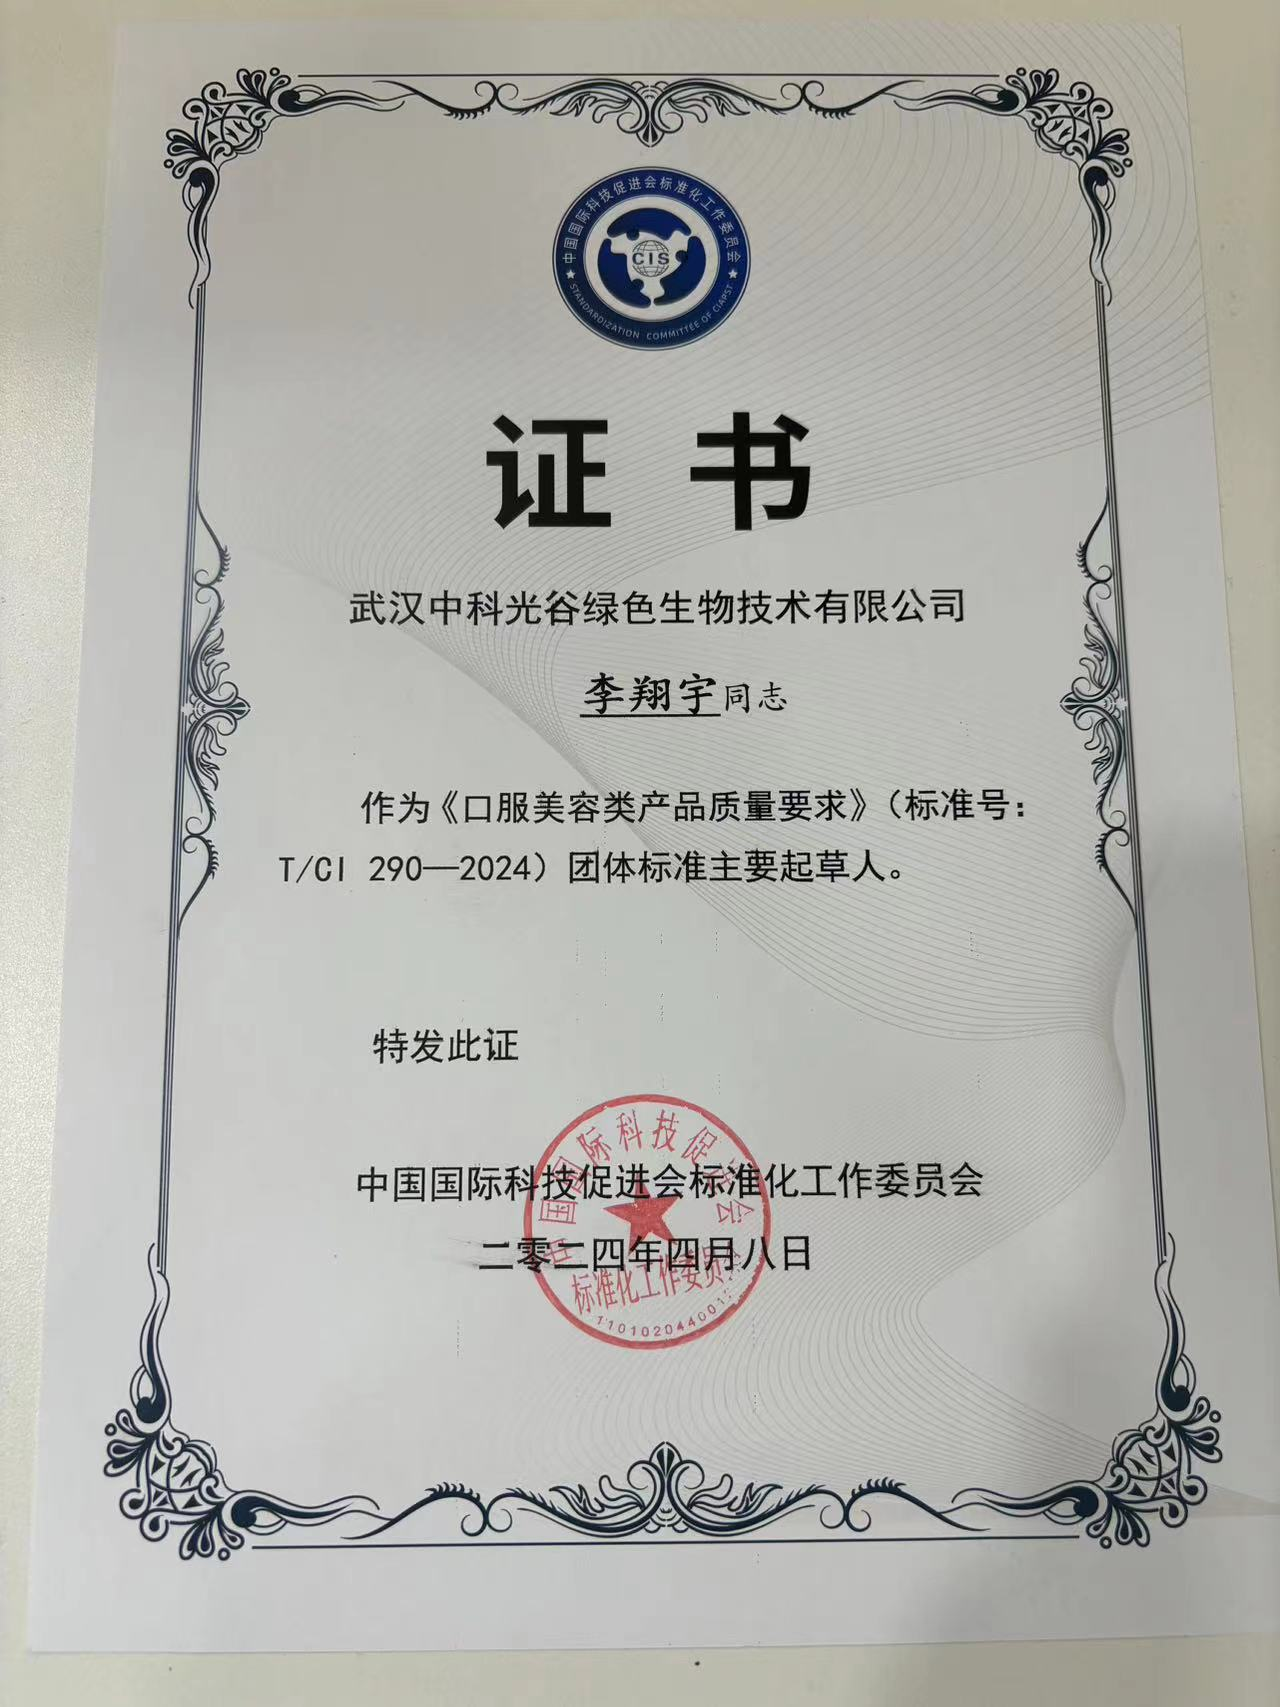 中科光谷总经理李翔宇  荣获 “团体标准主要起草人”证书